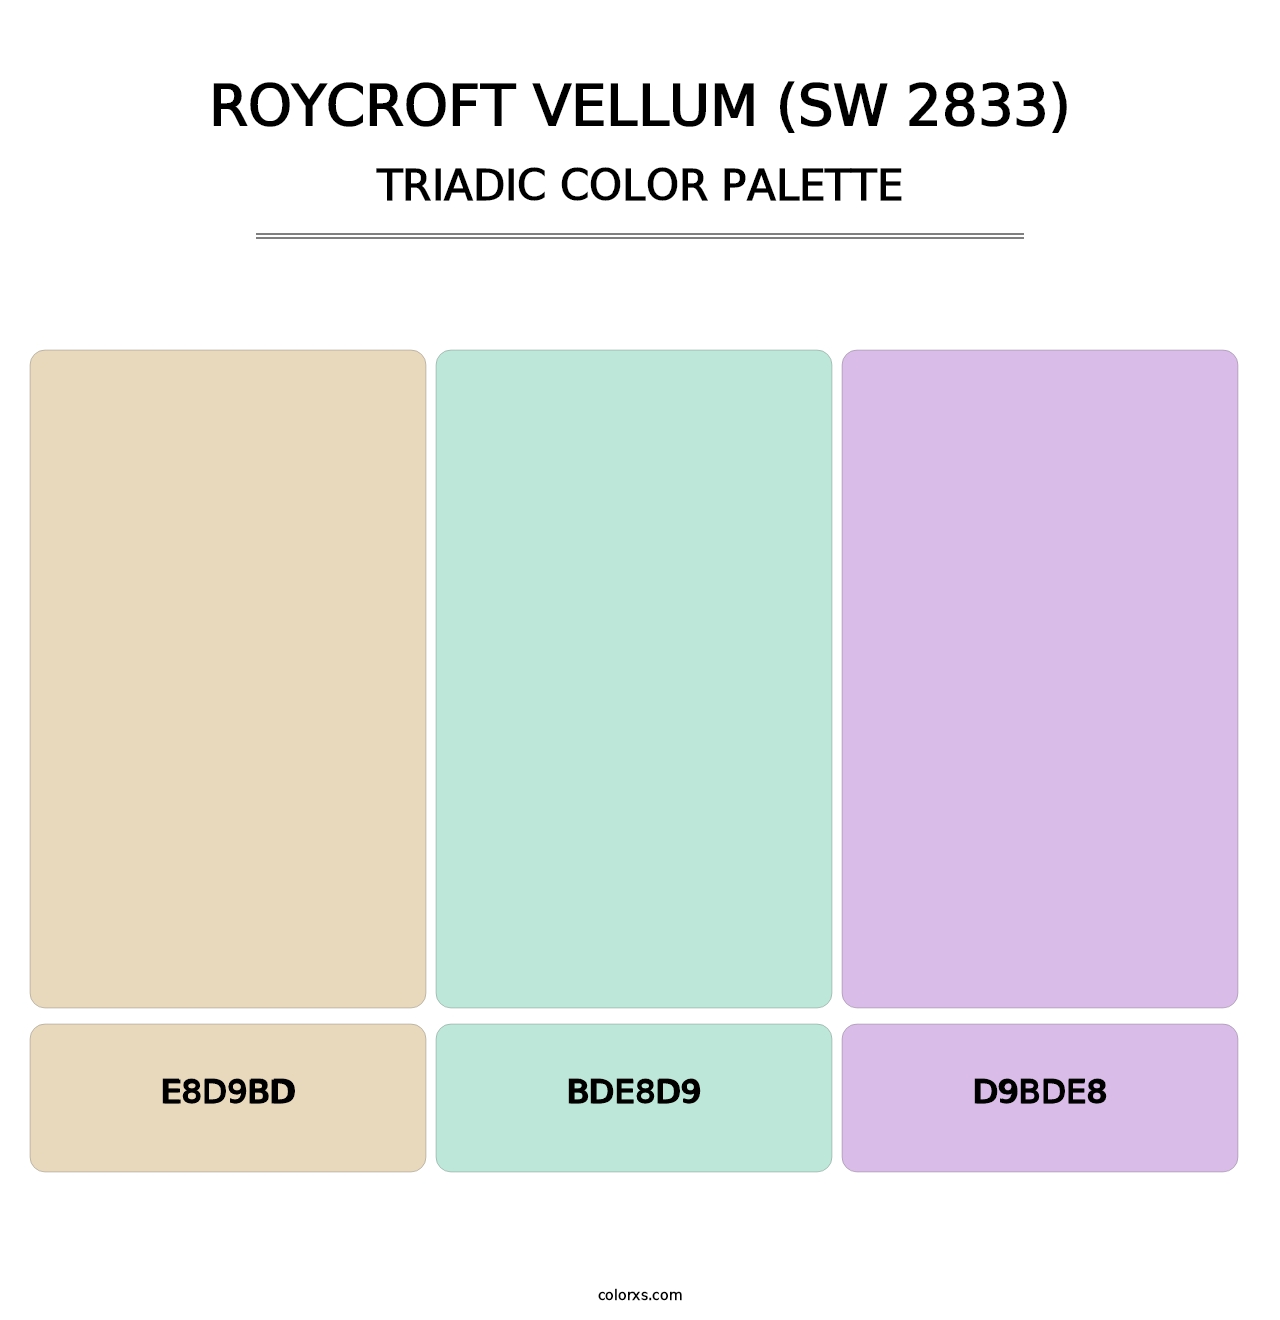 Roycroft Vellum (SW 2833) - Triadic Color Palette